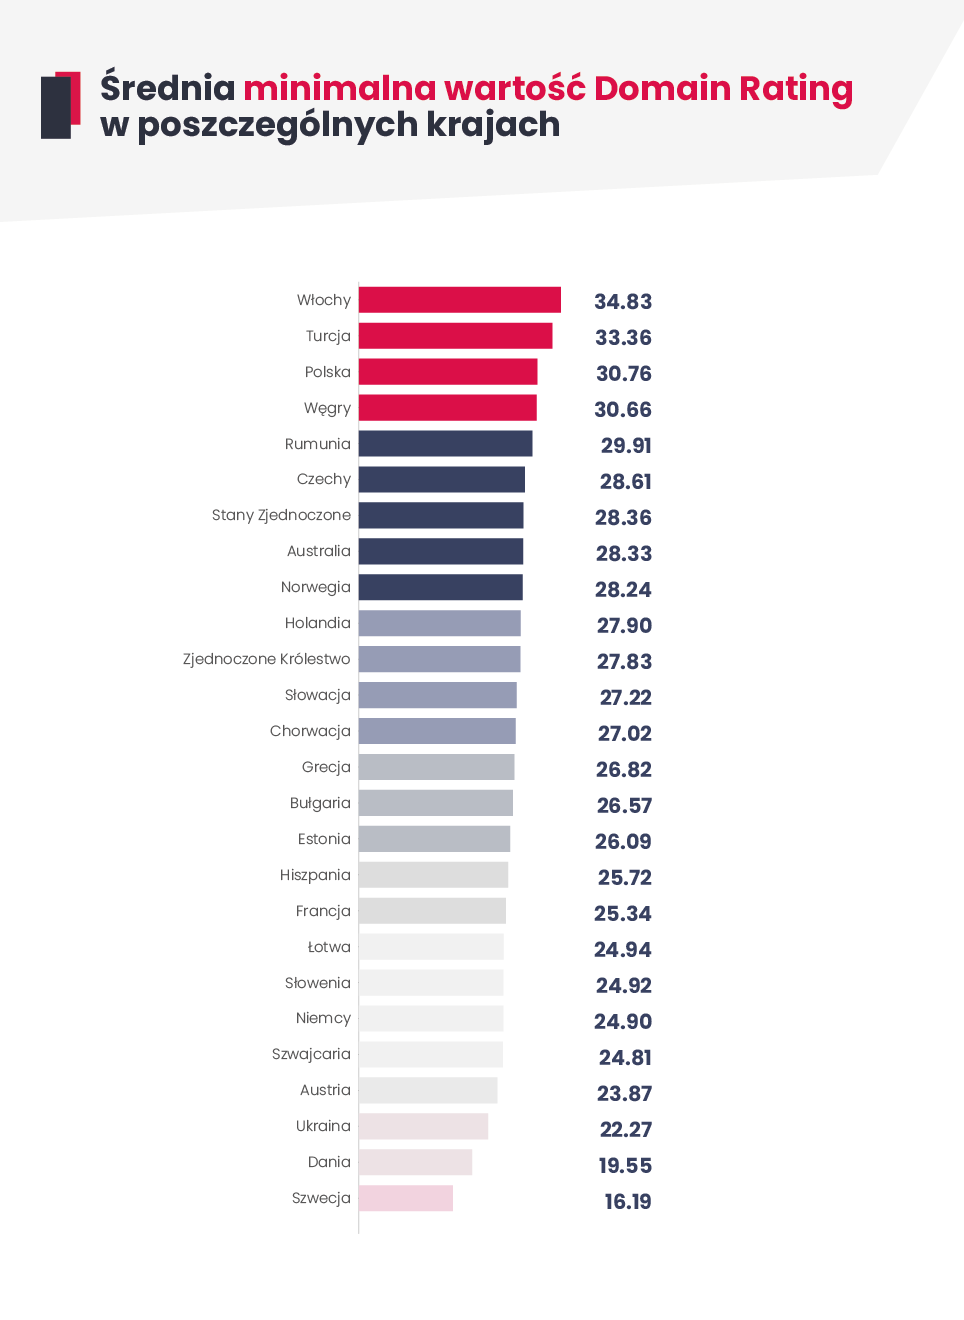 Wykres słupkowy przedstawiający średnie wprowadzane minimalne wartości Domain Rating w poszczególnych krajach na platformie WhitePress